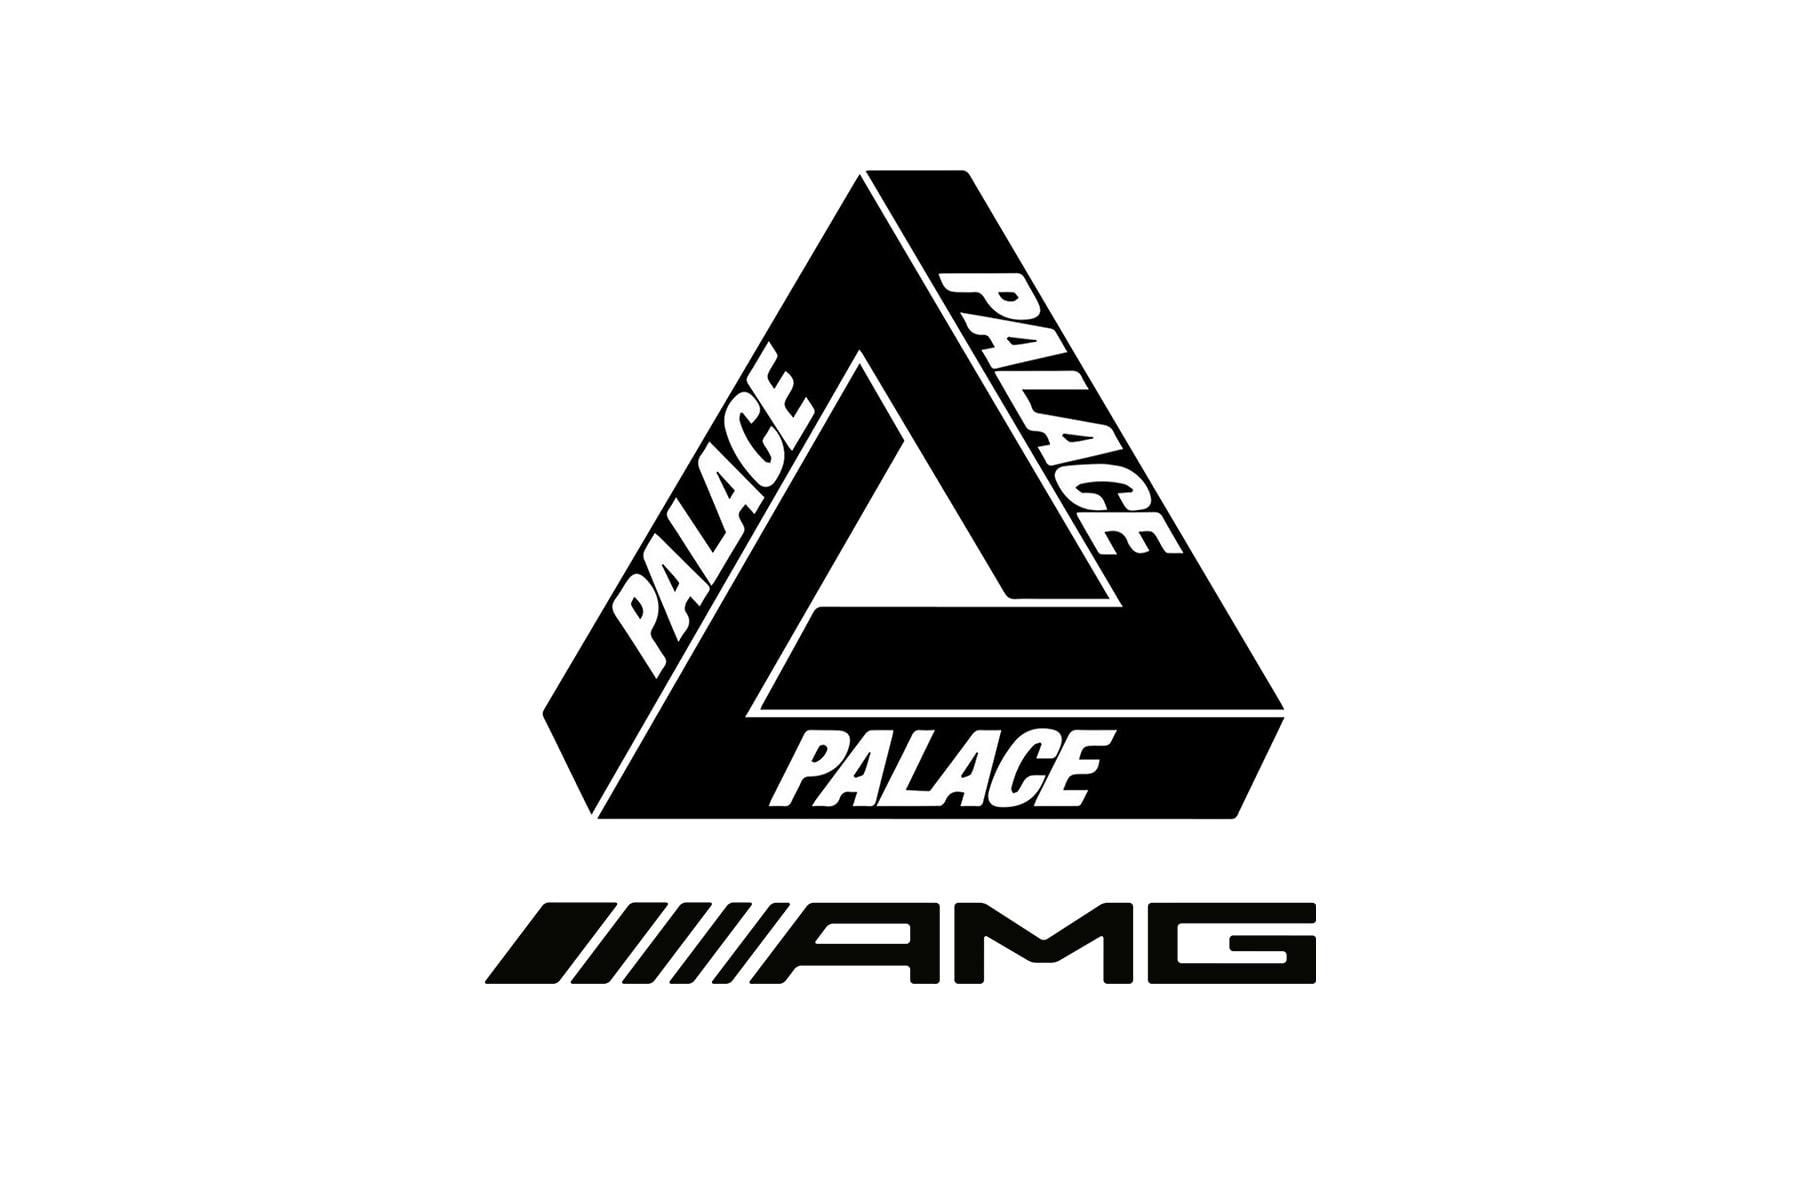 重磅跨界降臨 – Palace x Mercedes-AMG 全新聯乘計畫預告發佈